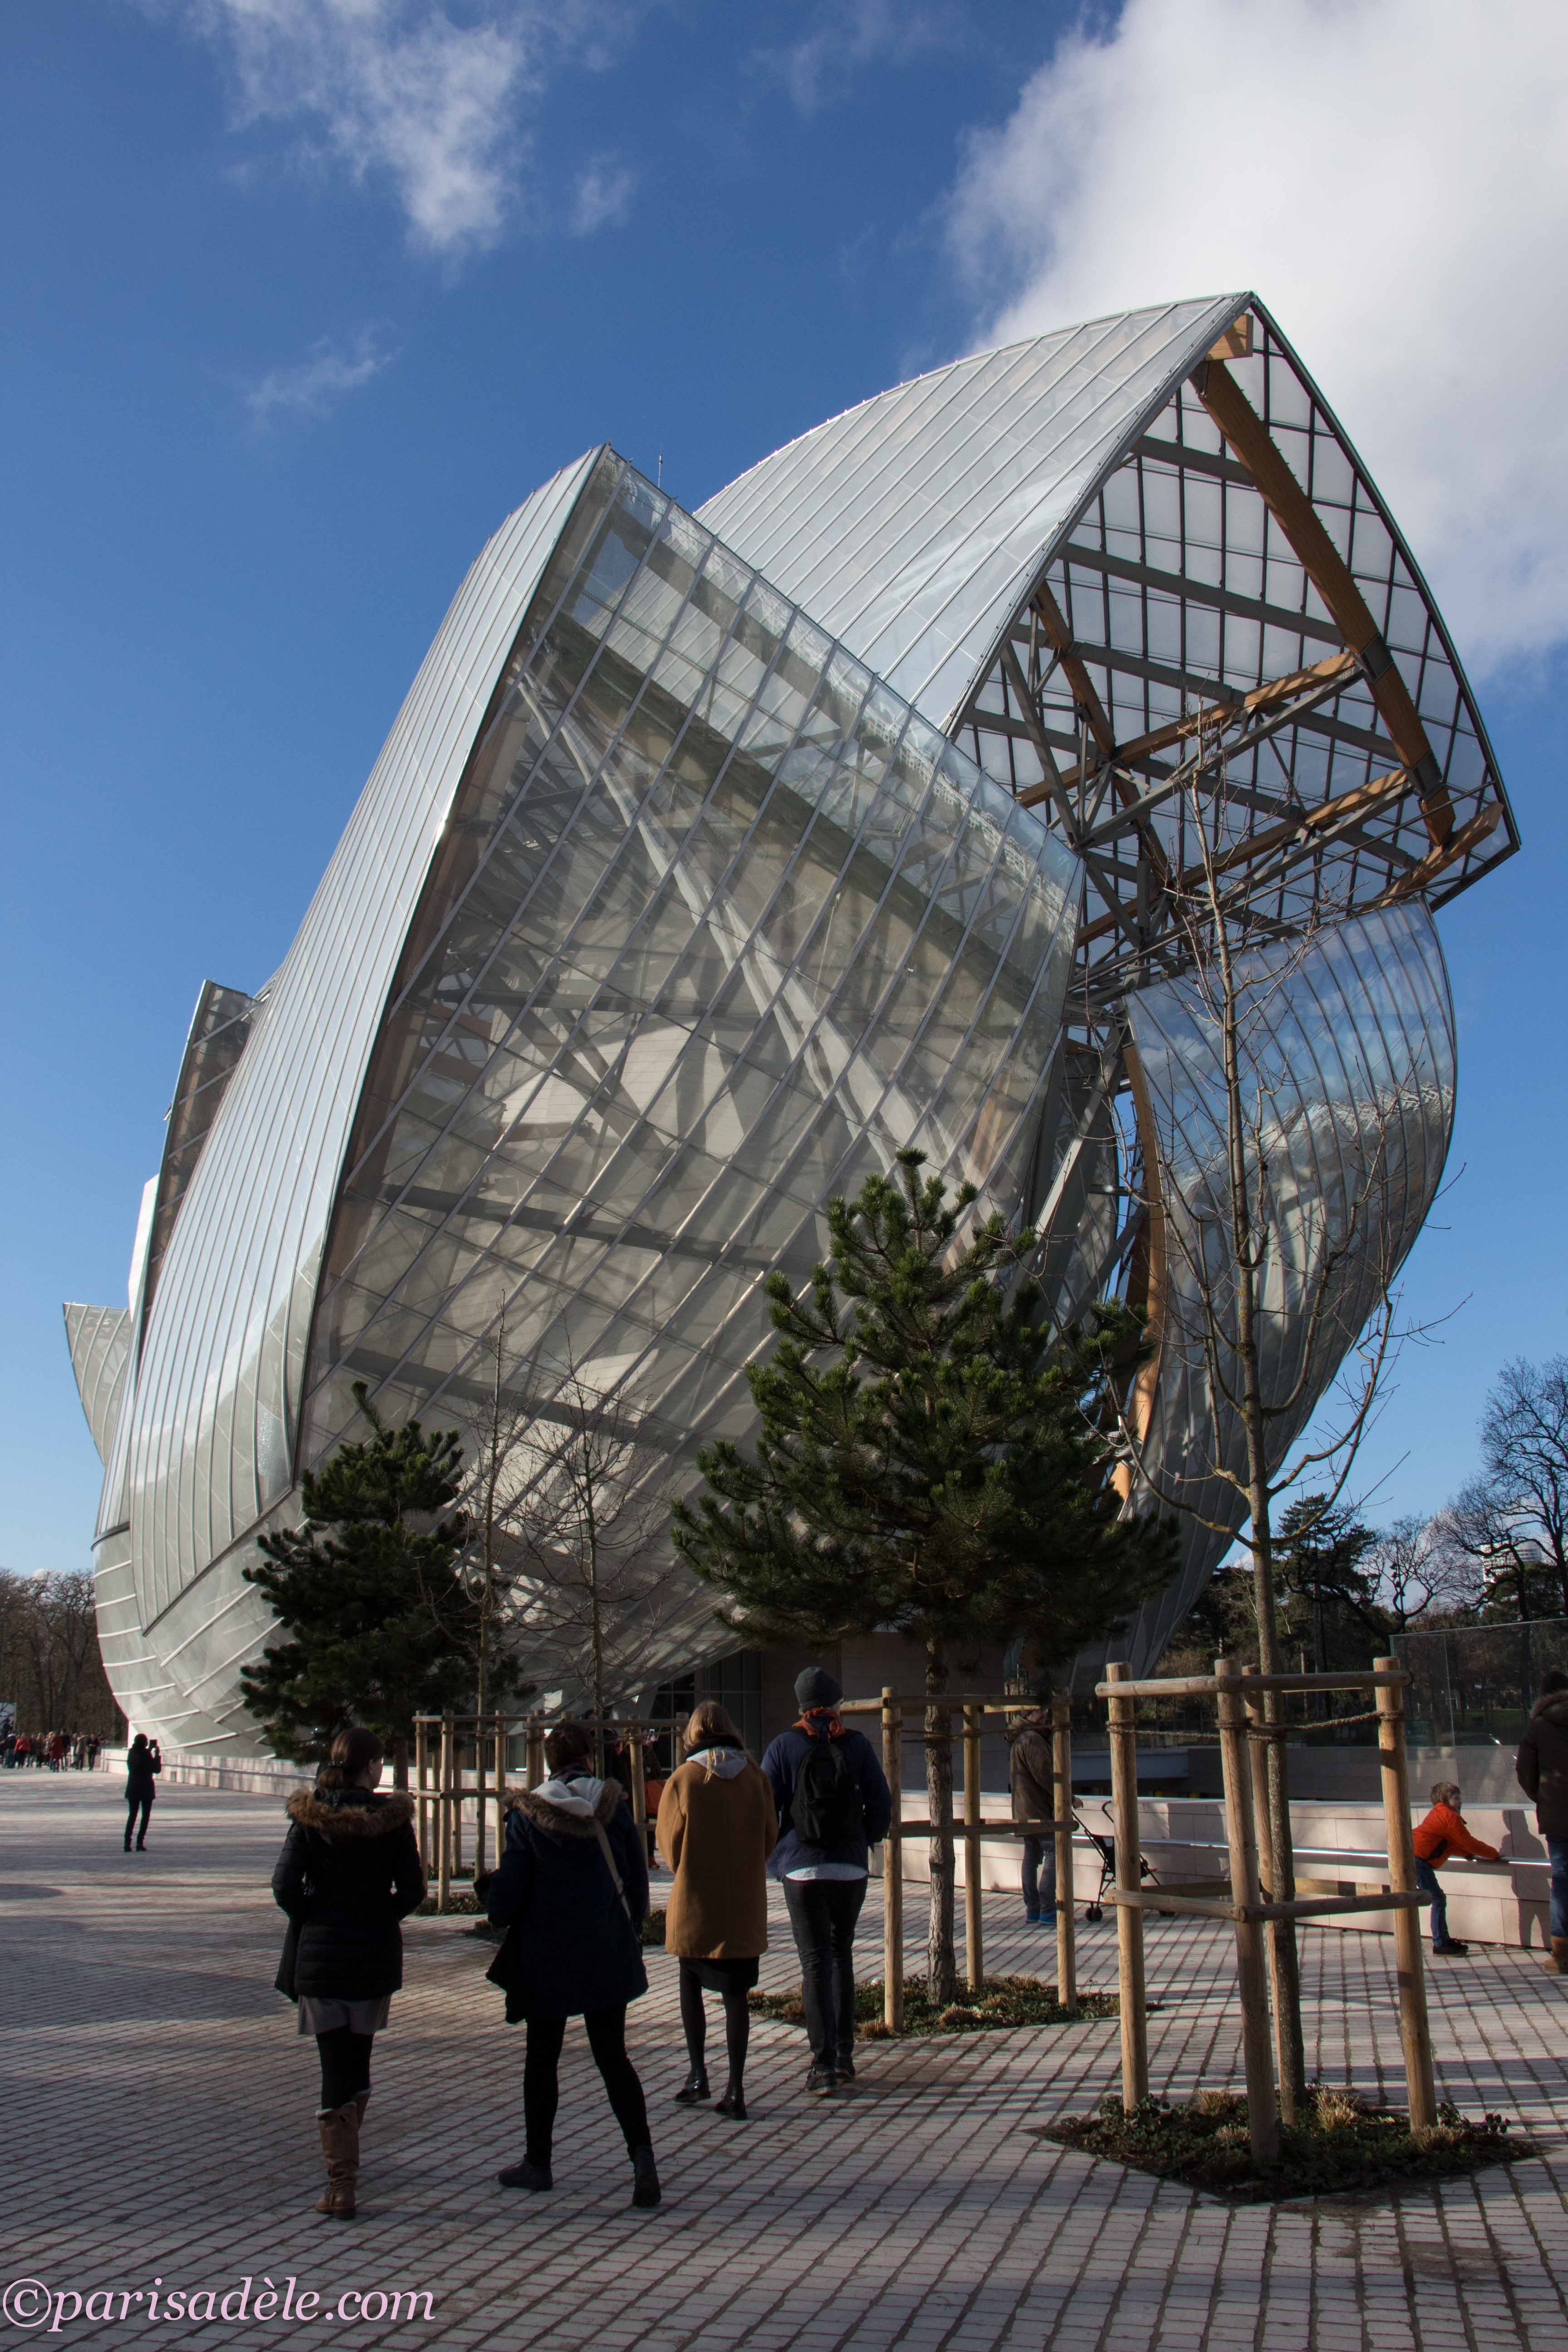 Fondation Louis Vuitton Tickets - Paris